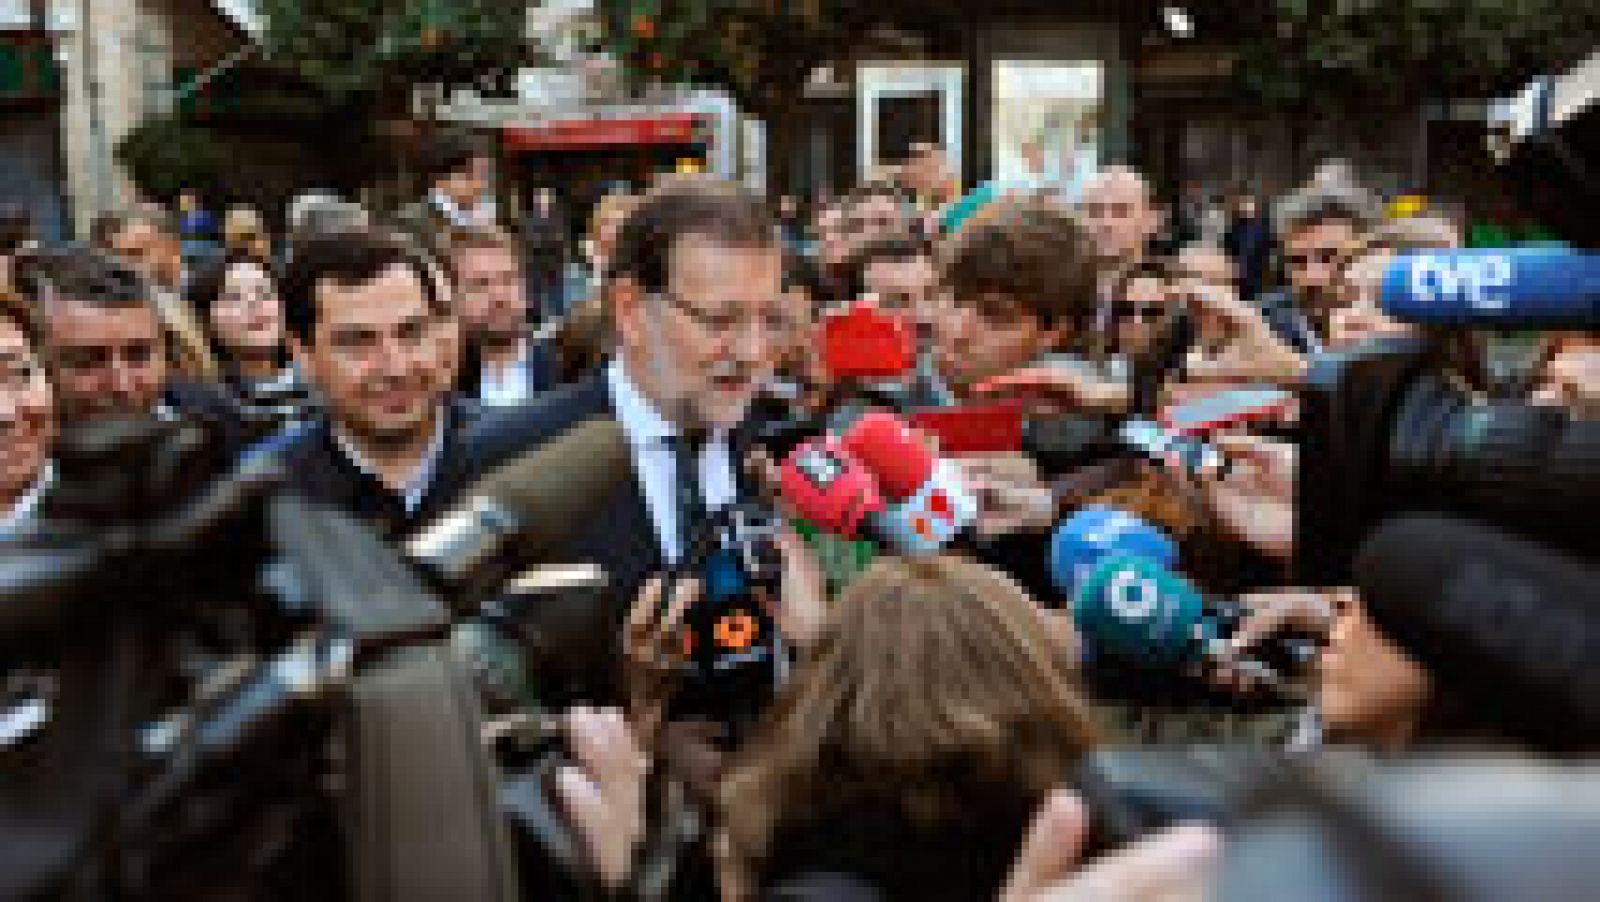 Telediario 1: Rajoy asegura que el PP ofrece "tranquilidad" y "equilibrio" frente a "experimentos" de otros | RTVE Play